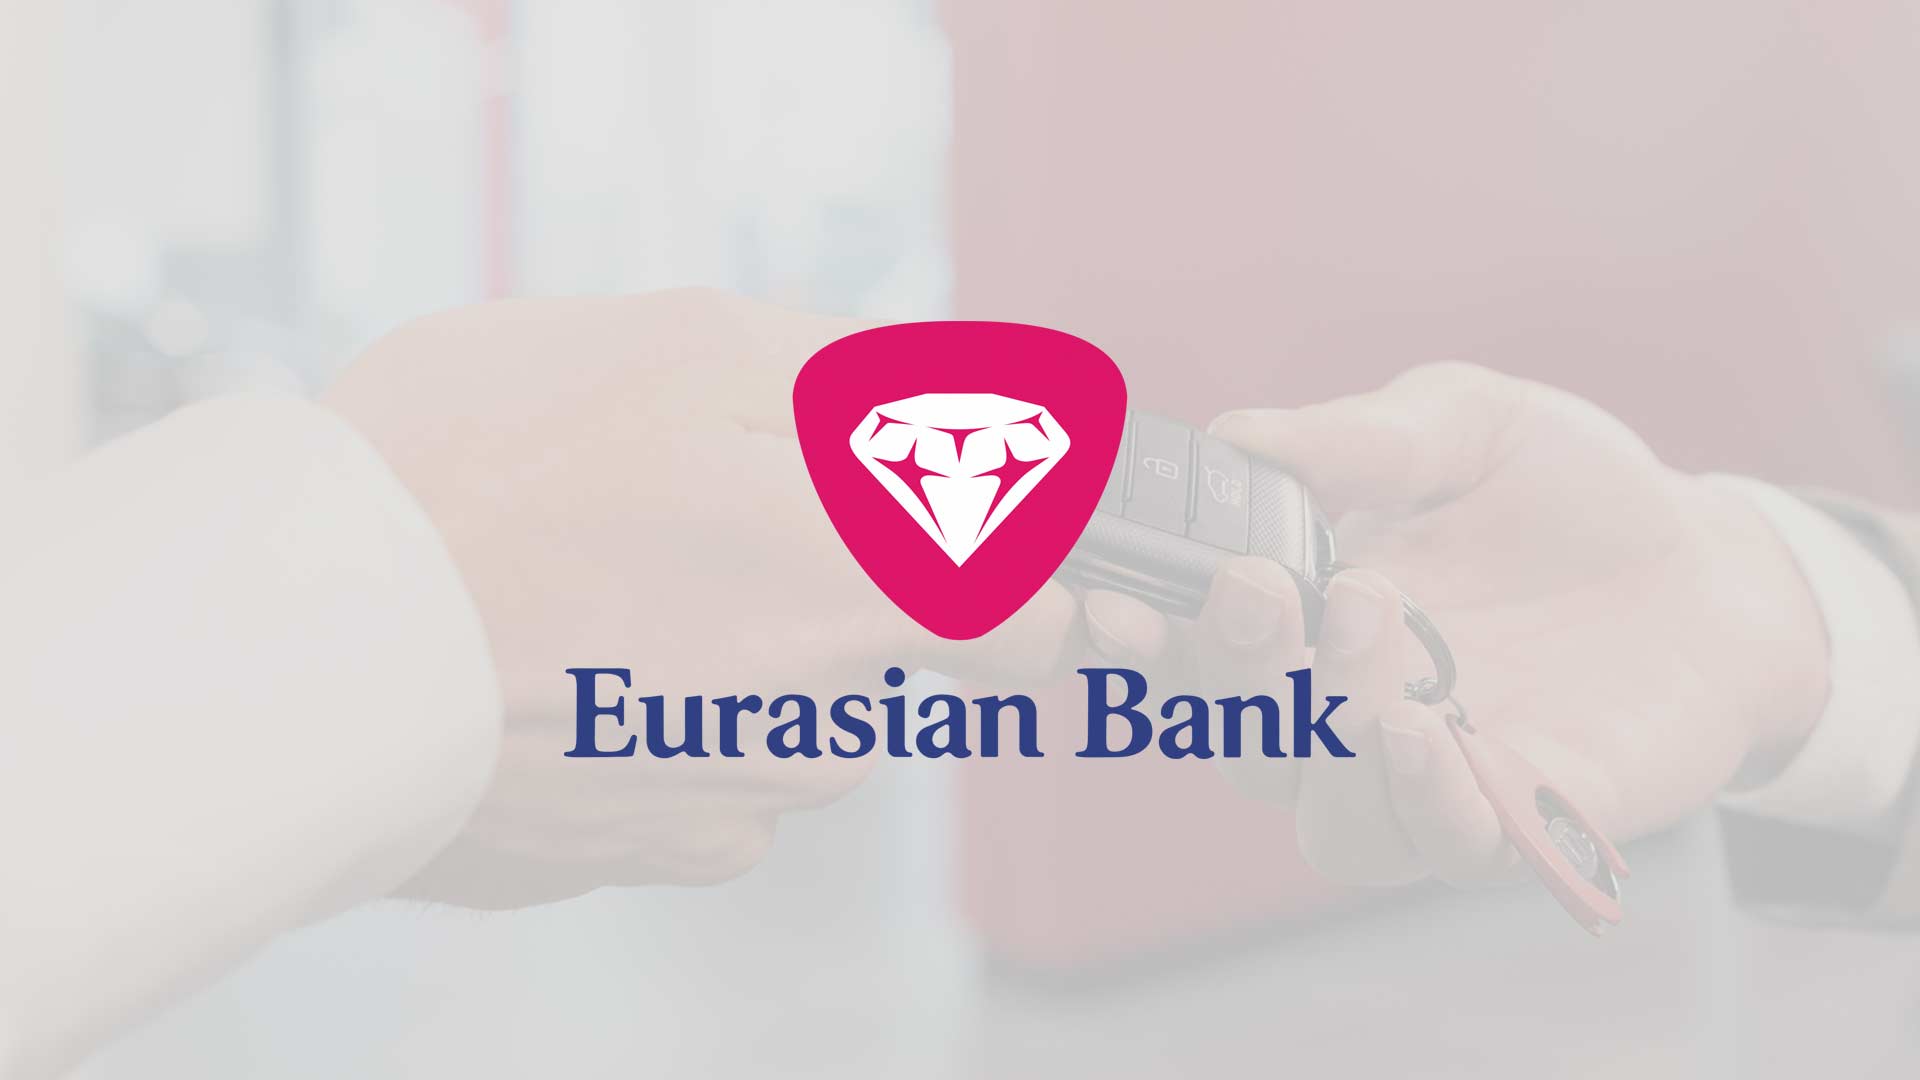 Eurasion Bank (Евразийский Банк)